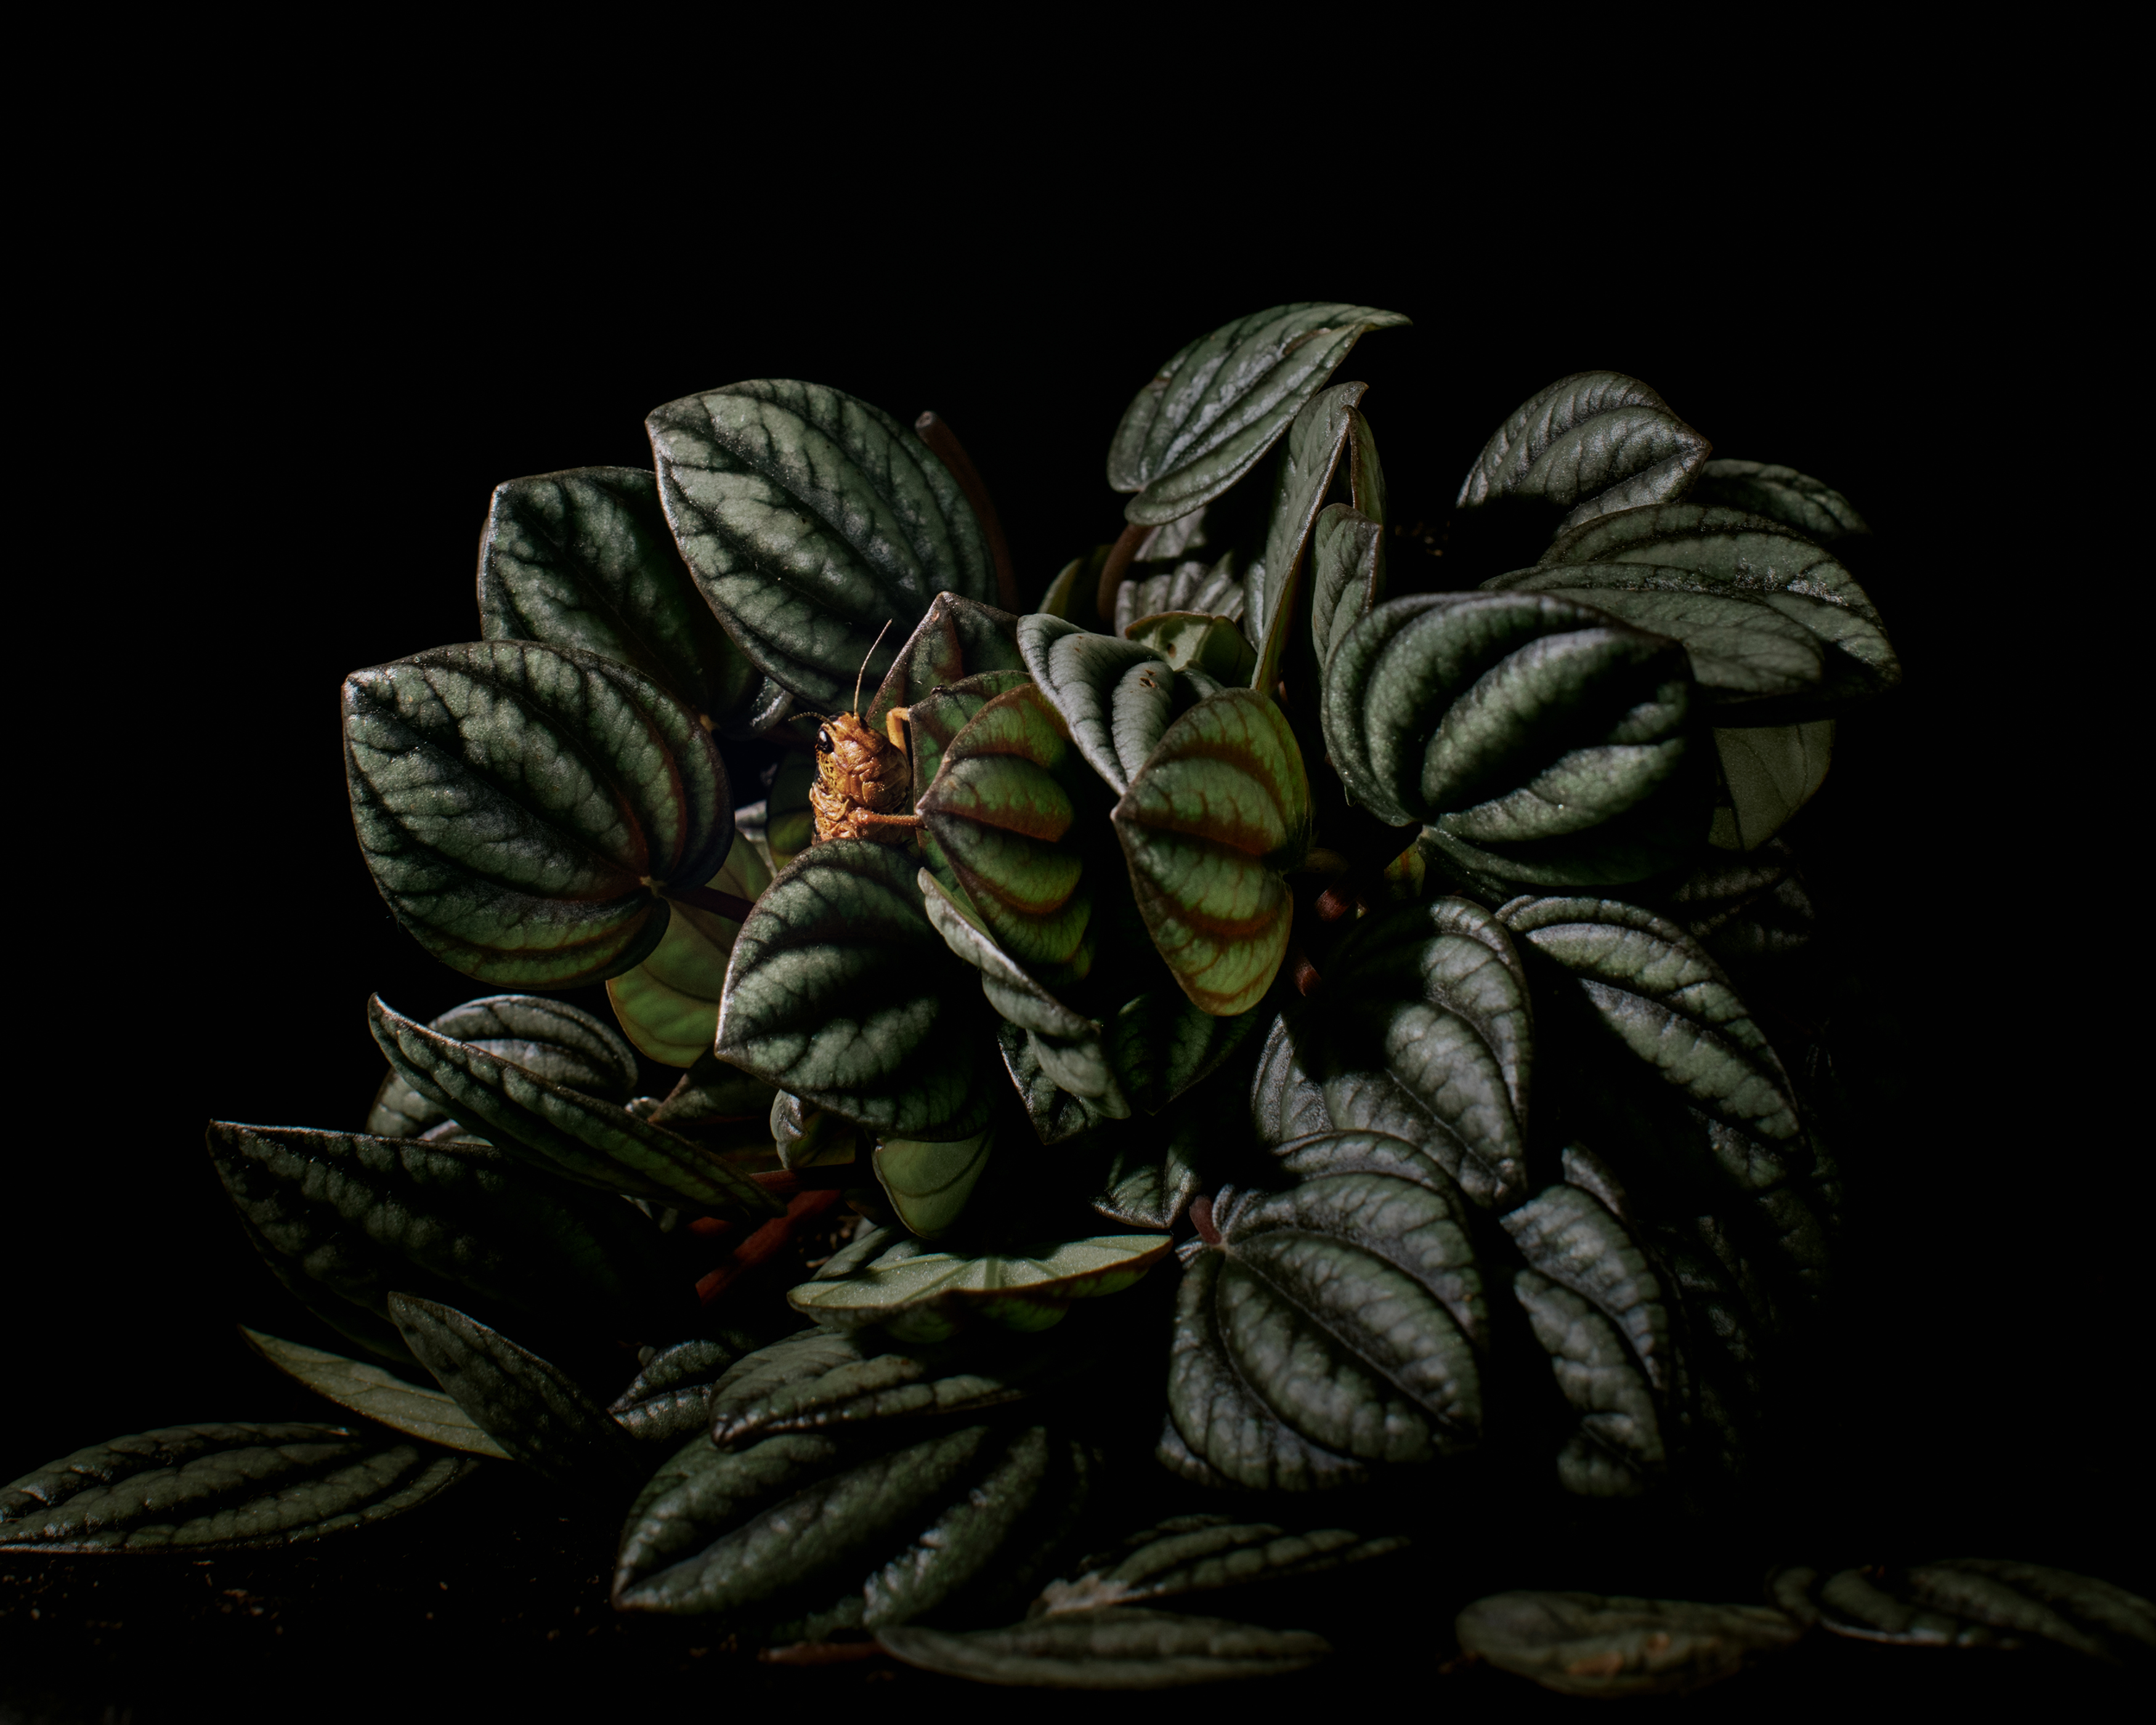 Kasvi kuvattuna studiossa mustaa taustaa vasten. Kasvin lehdellä on kulkusirkka.